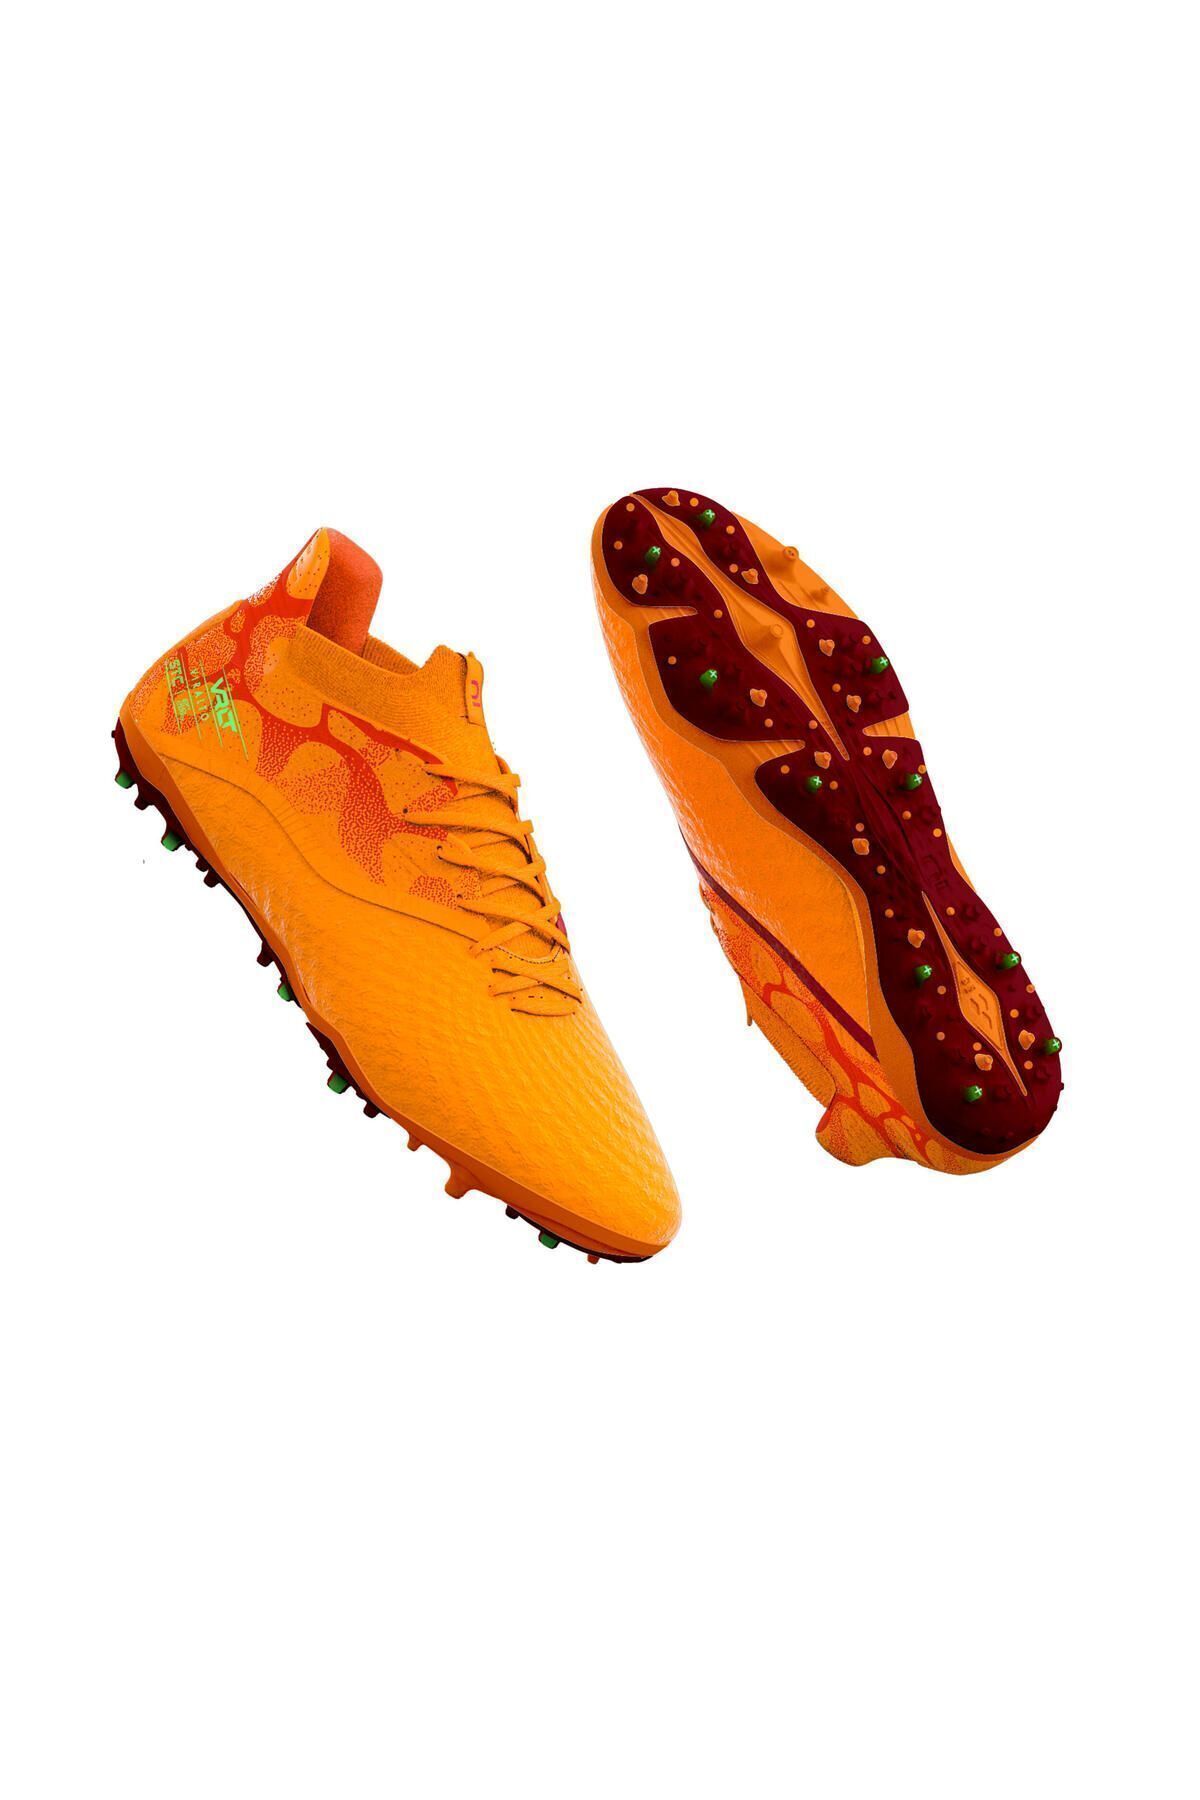 Decathlon Çocuk Krampon / Futbol Ayakkabısı - Mango Rengi - Viralto Iıı Mg/ag